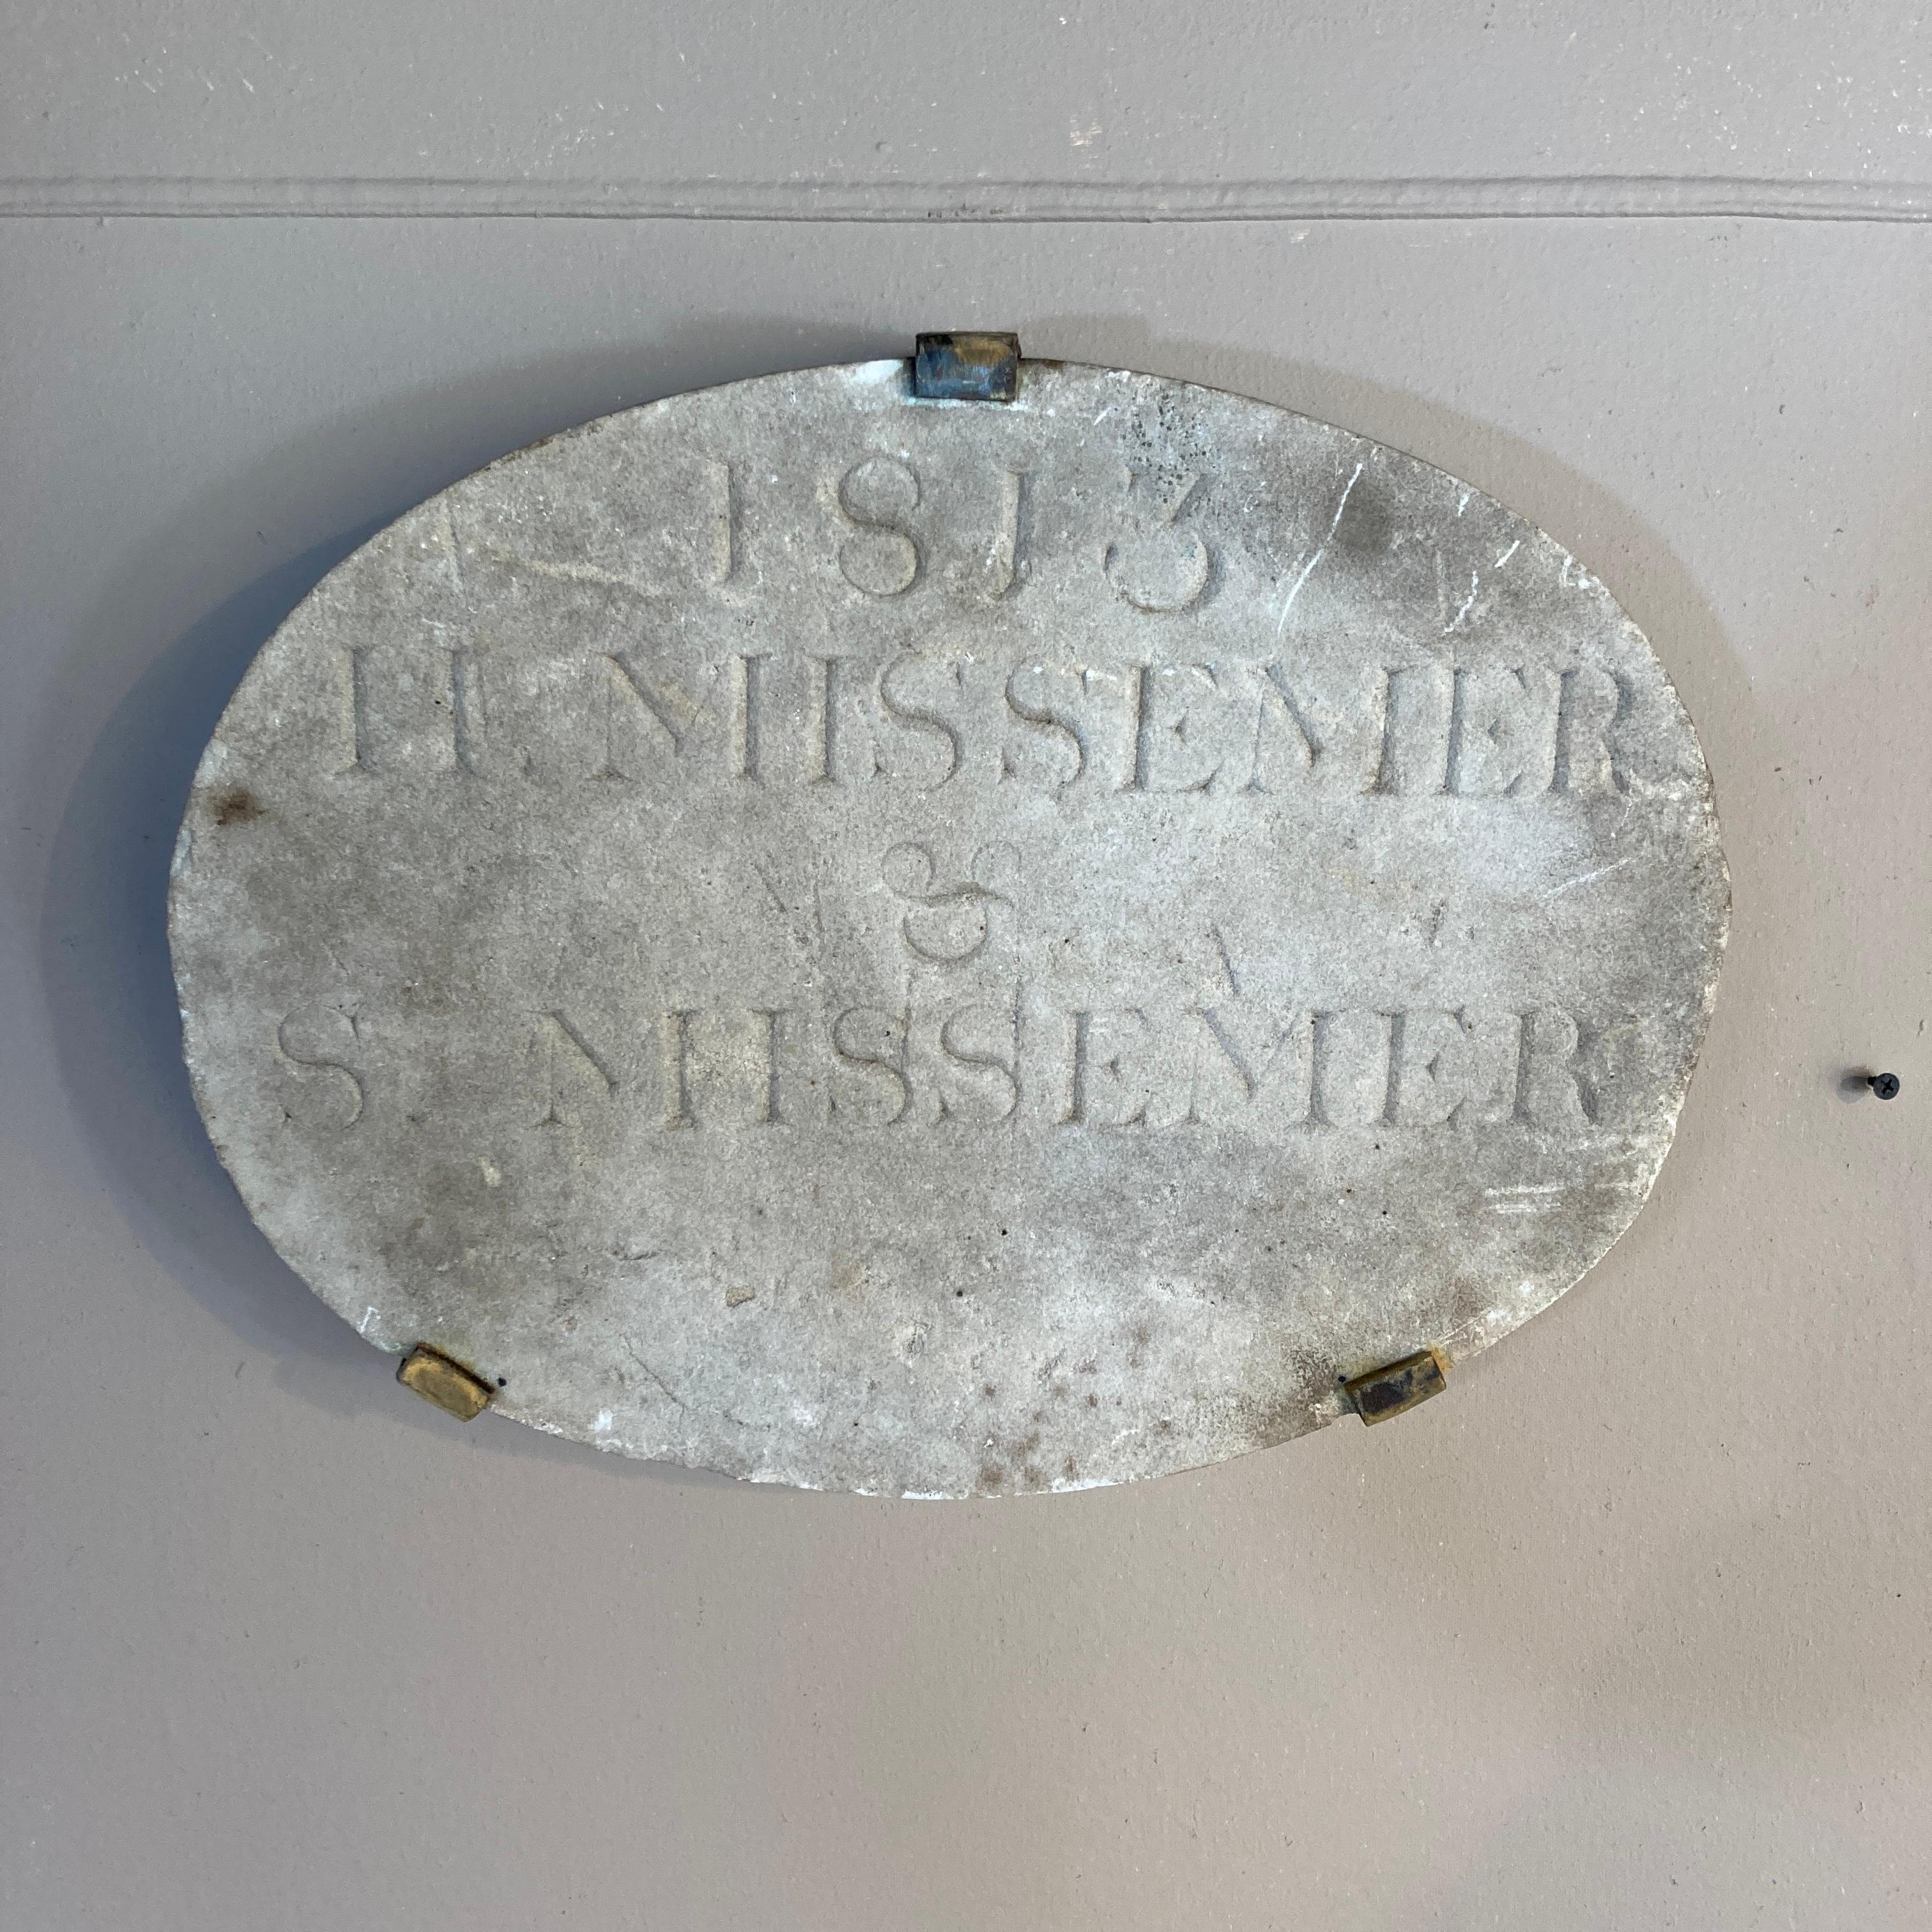 Ein gespenstisches und ungewöhnliches amerikanisches Baudenkmal aus geschnitztem Marmor, wahrscheinlich aus Neuengland, um 1813. Die eingravierten Namen sind H. Missemer & S. Missemer. Es ist in völlig ursprünglichem Zustand, und die Oberfläche